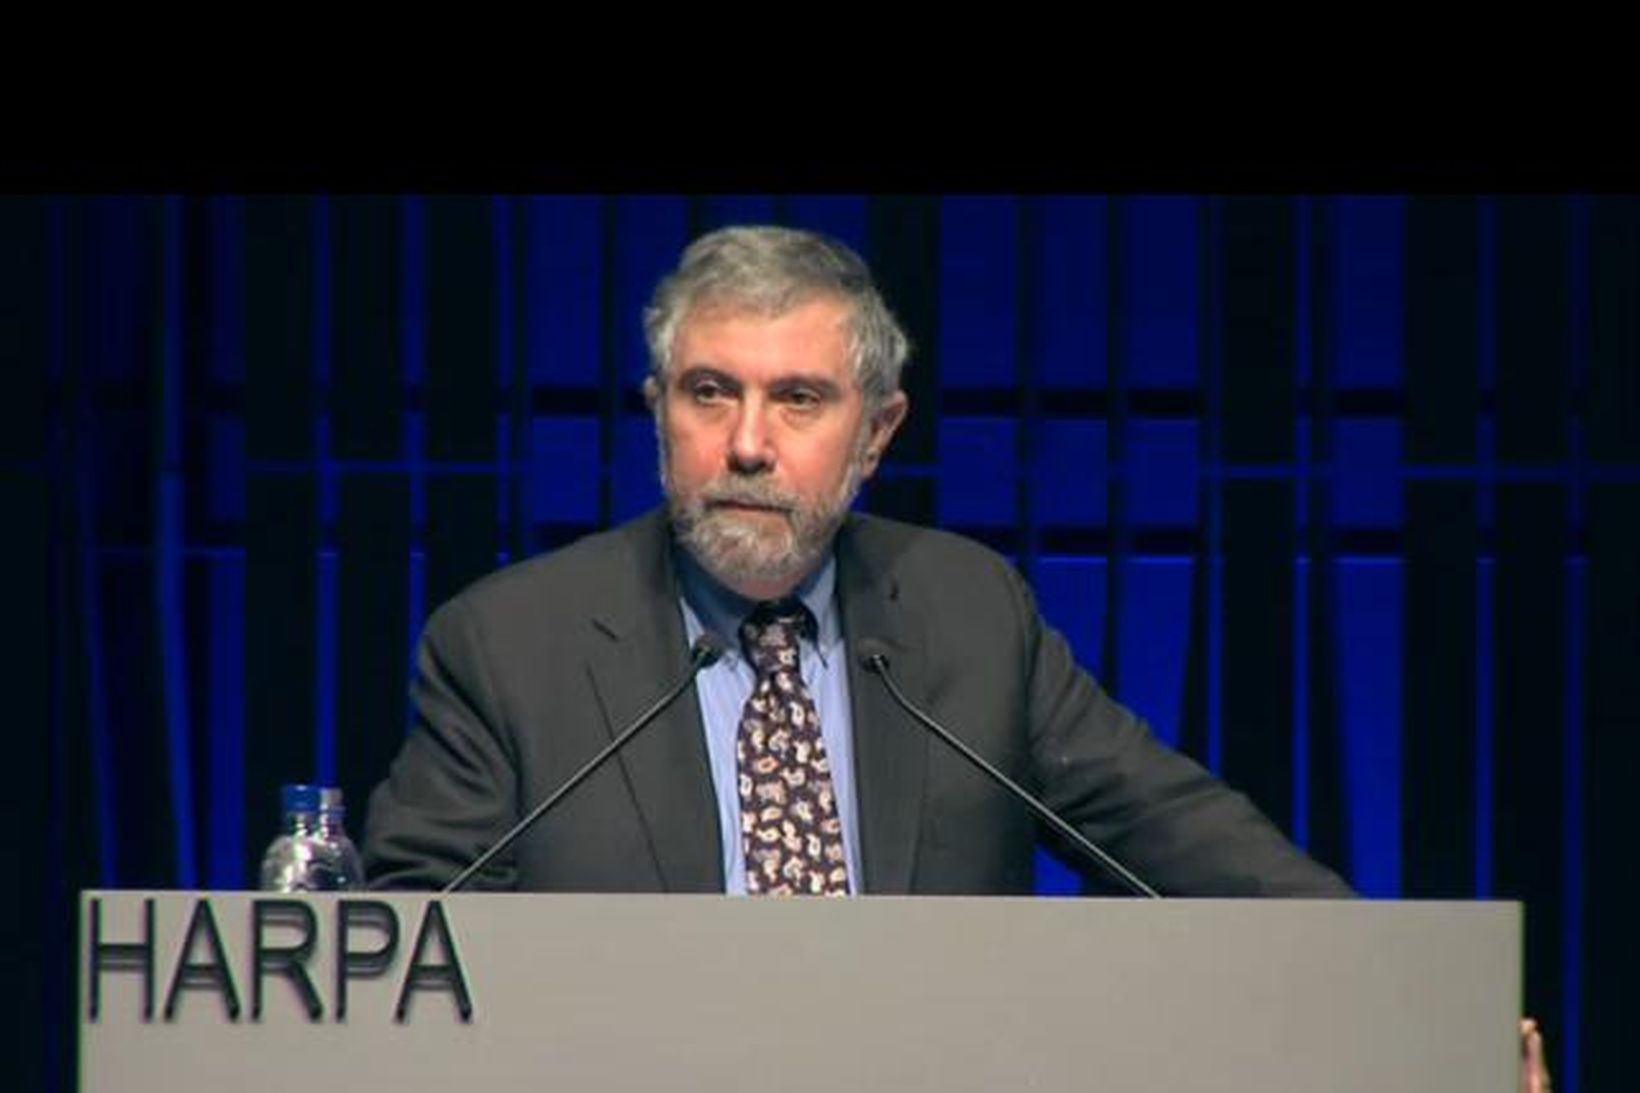 Hagfræðingurinn Paul Krugman flytur fyrirlestur á ráðstefnu í Hörpu